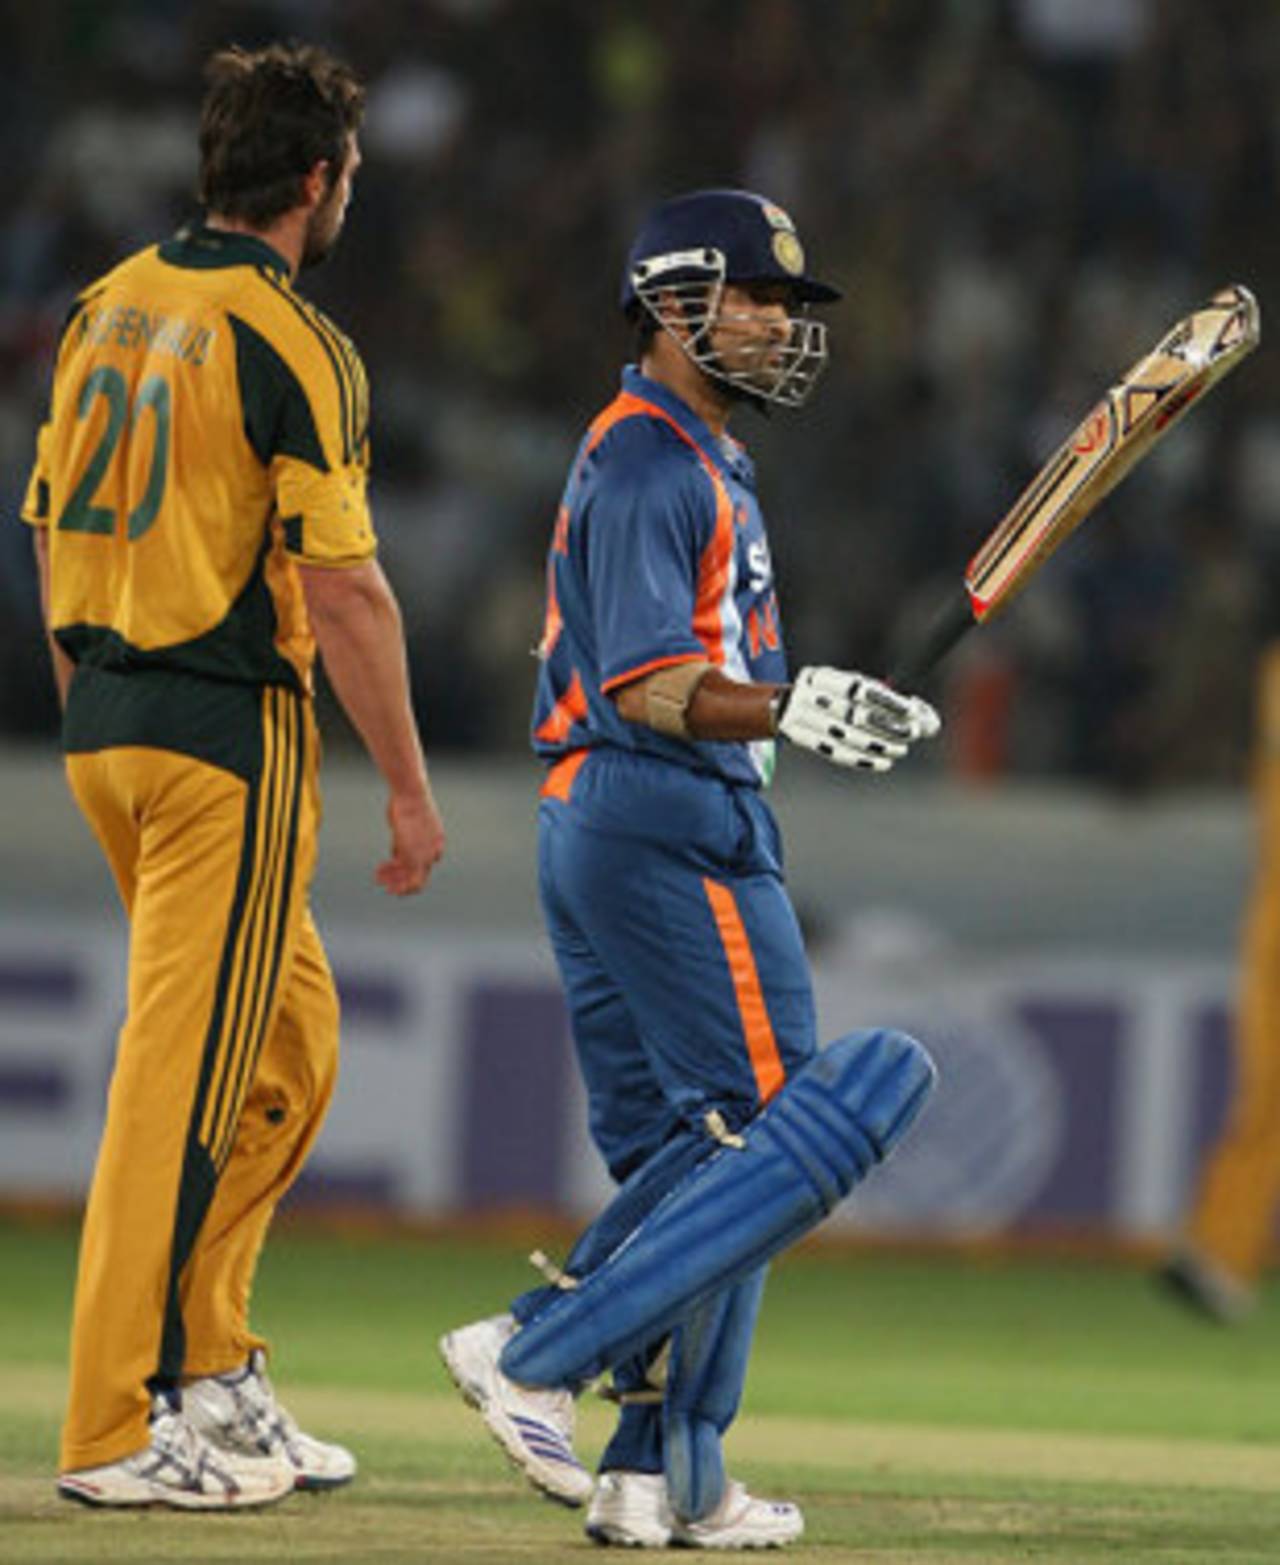 Sachin Tendulkar reaches 17,000 ODI runs, India v Australia, 5th ODI, Hyderabad, November 5, 2009